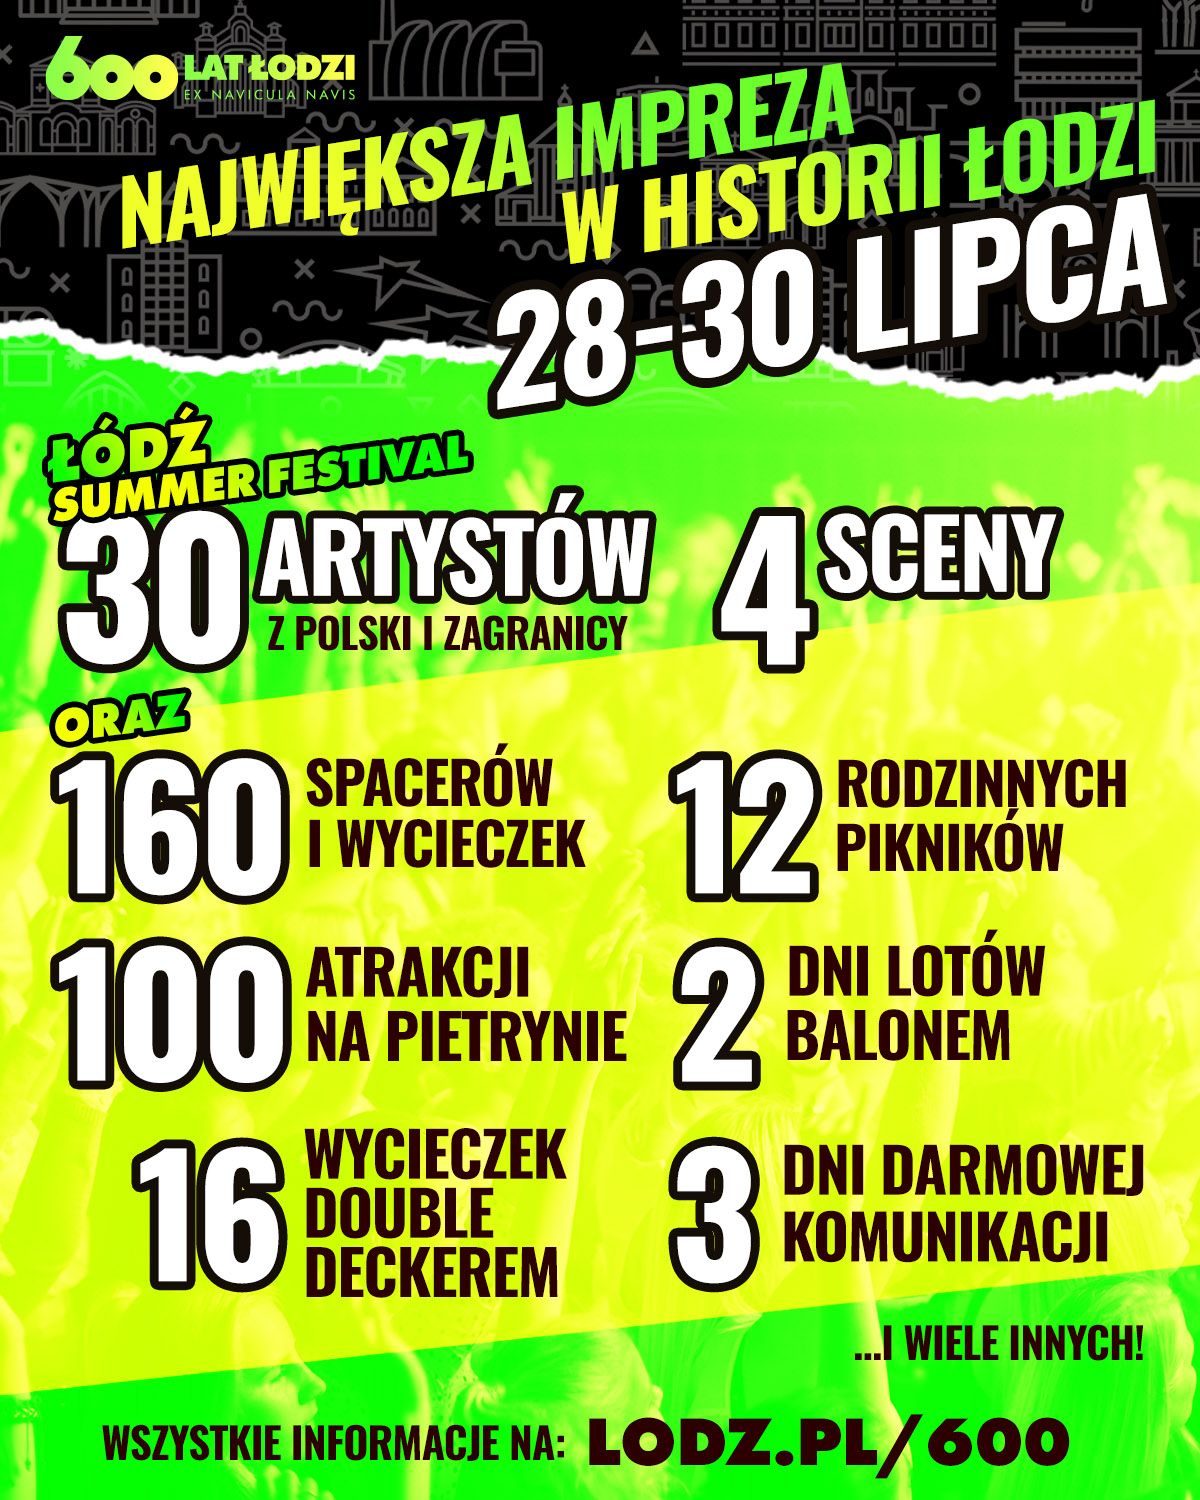 Plakat promujący obchody 600 lecia Łodzi